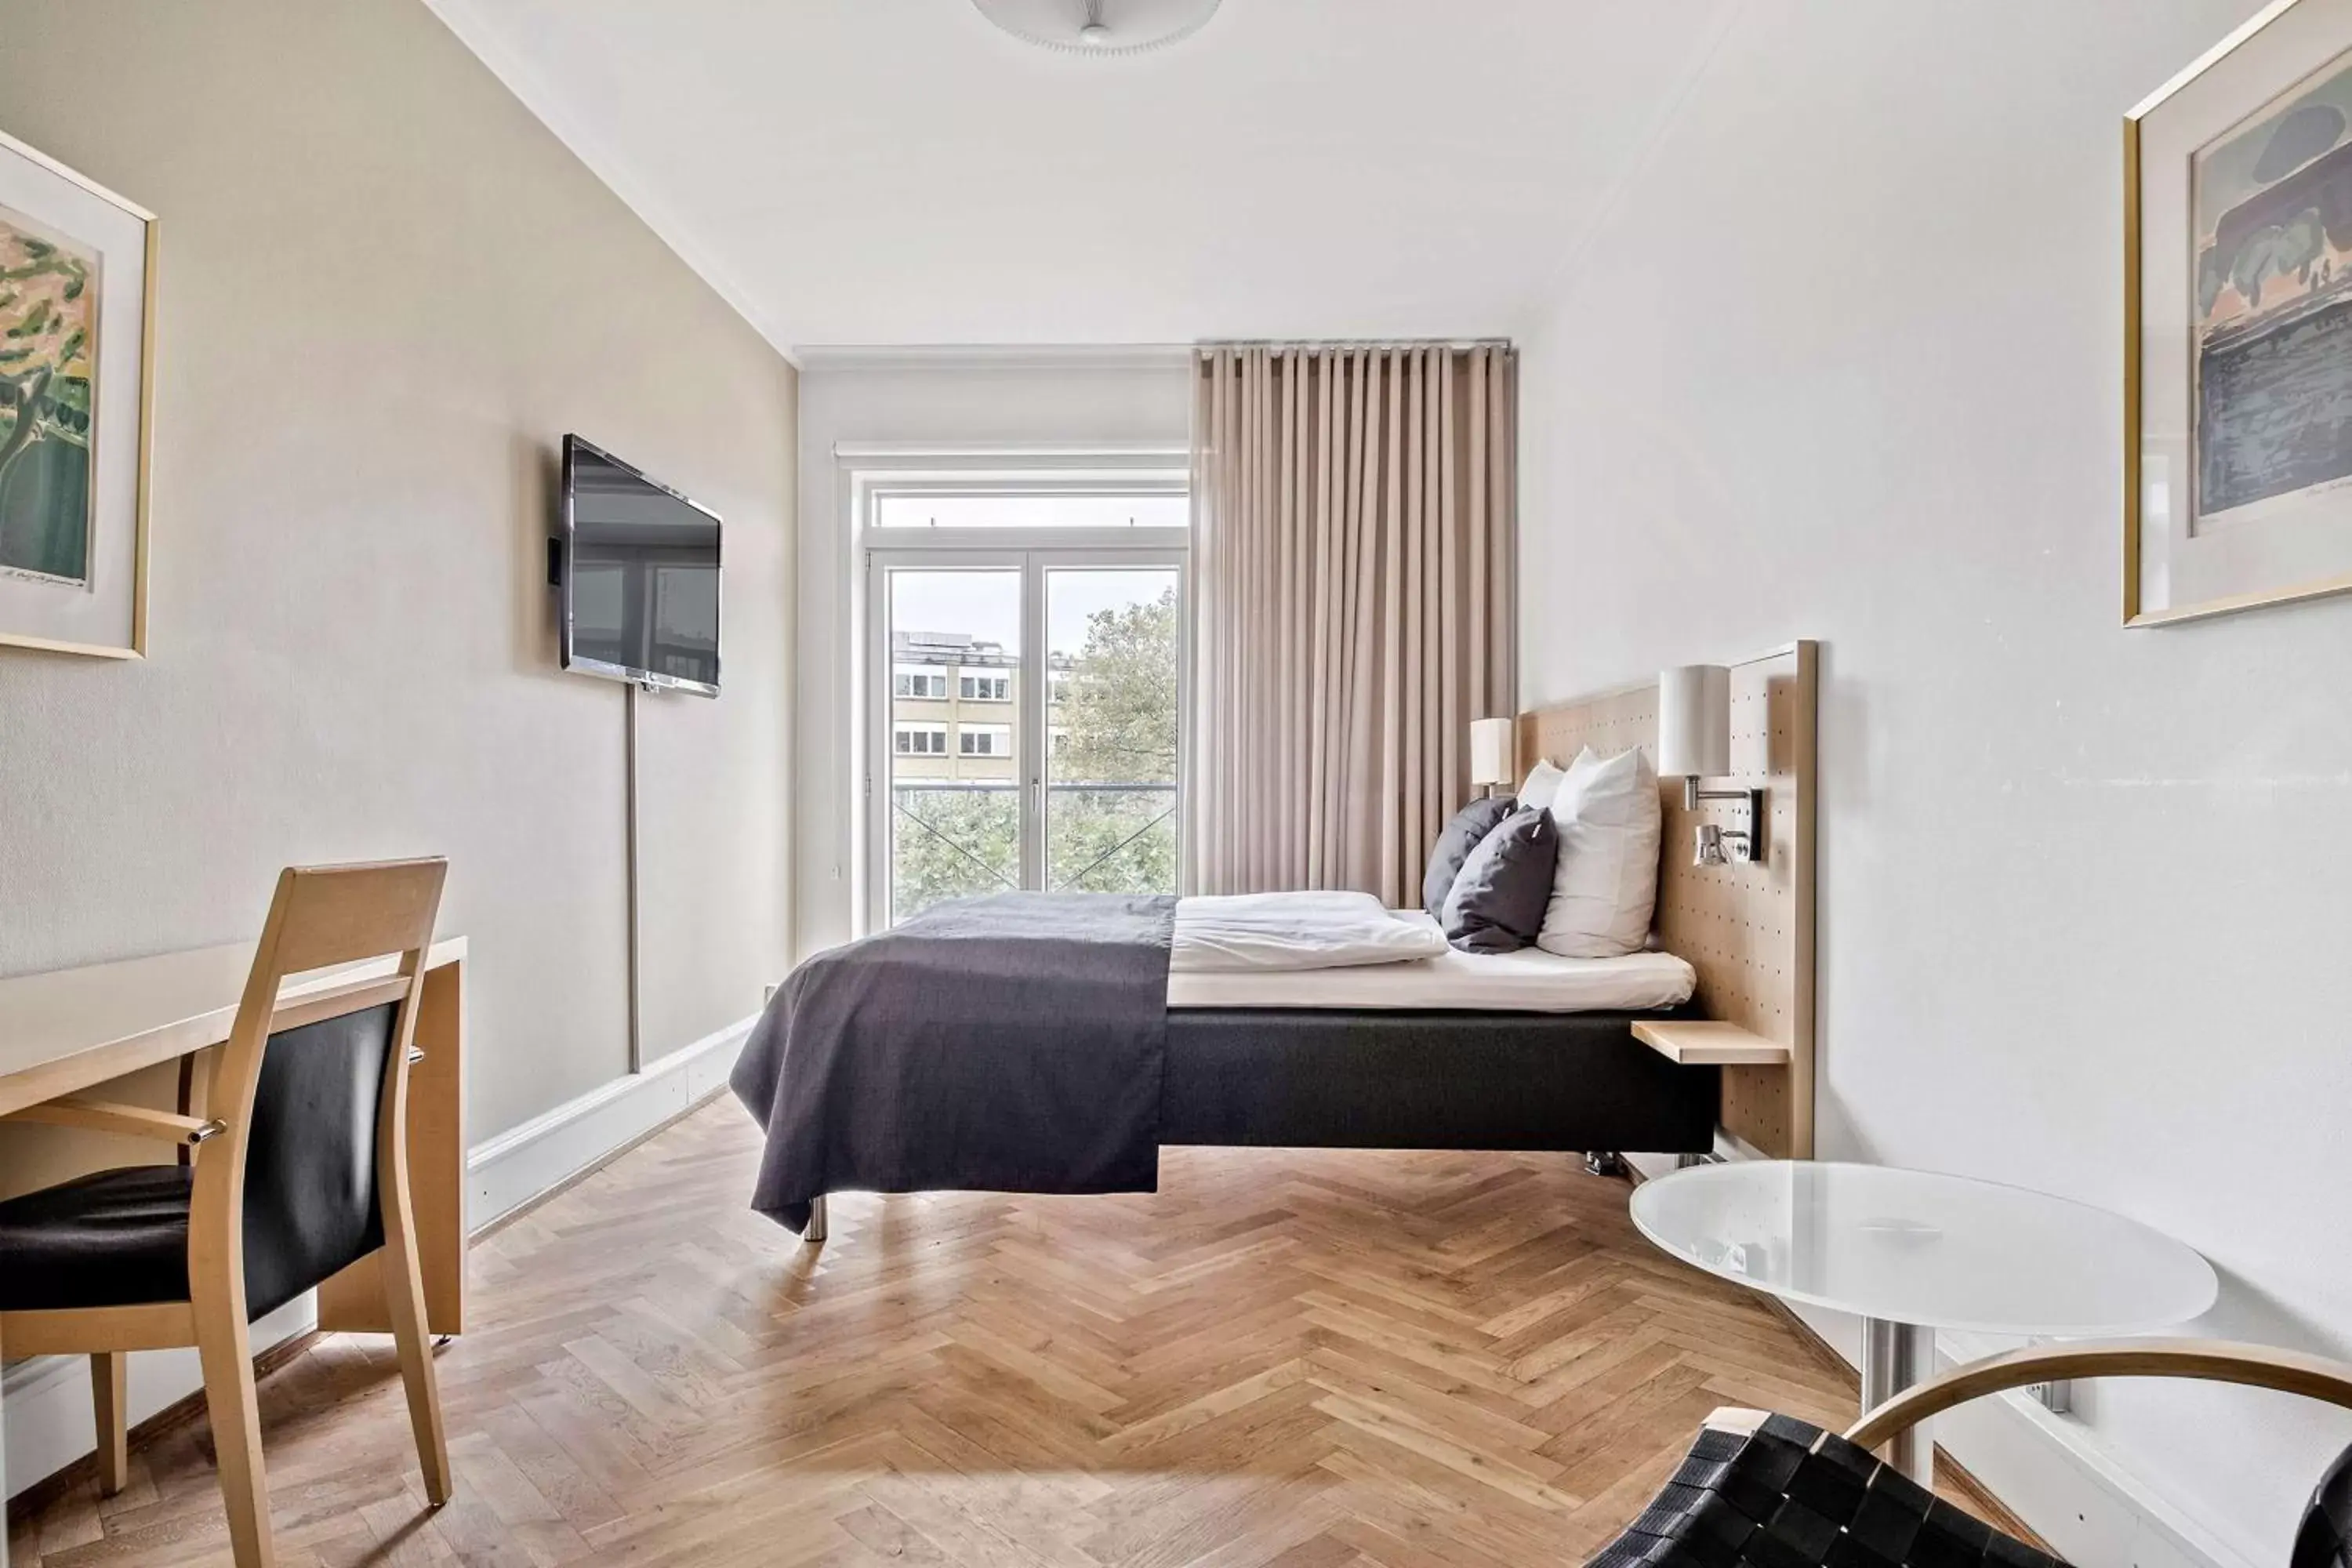 Bedroom, Bed in Best Western Plus Hotel Svendborg